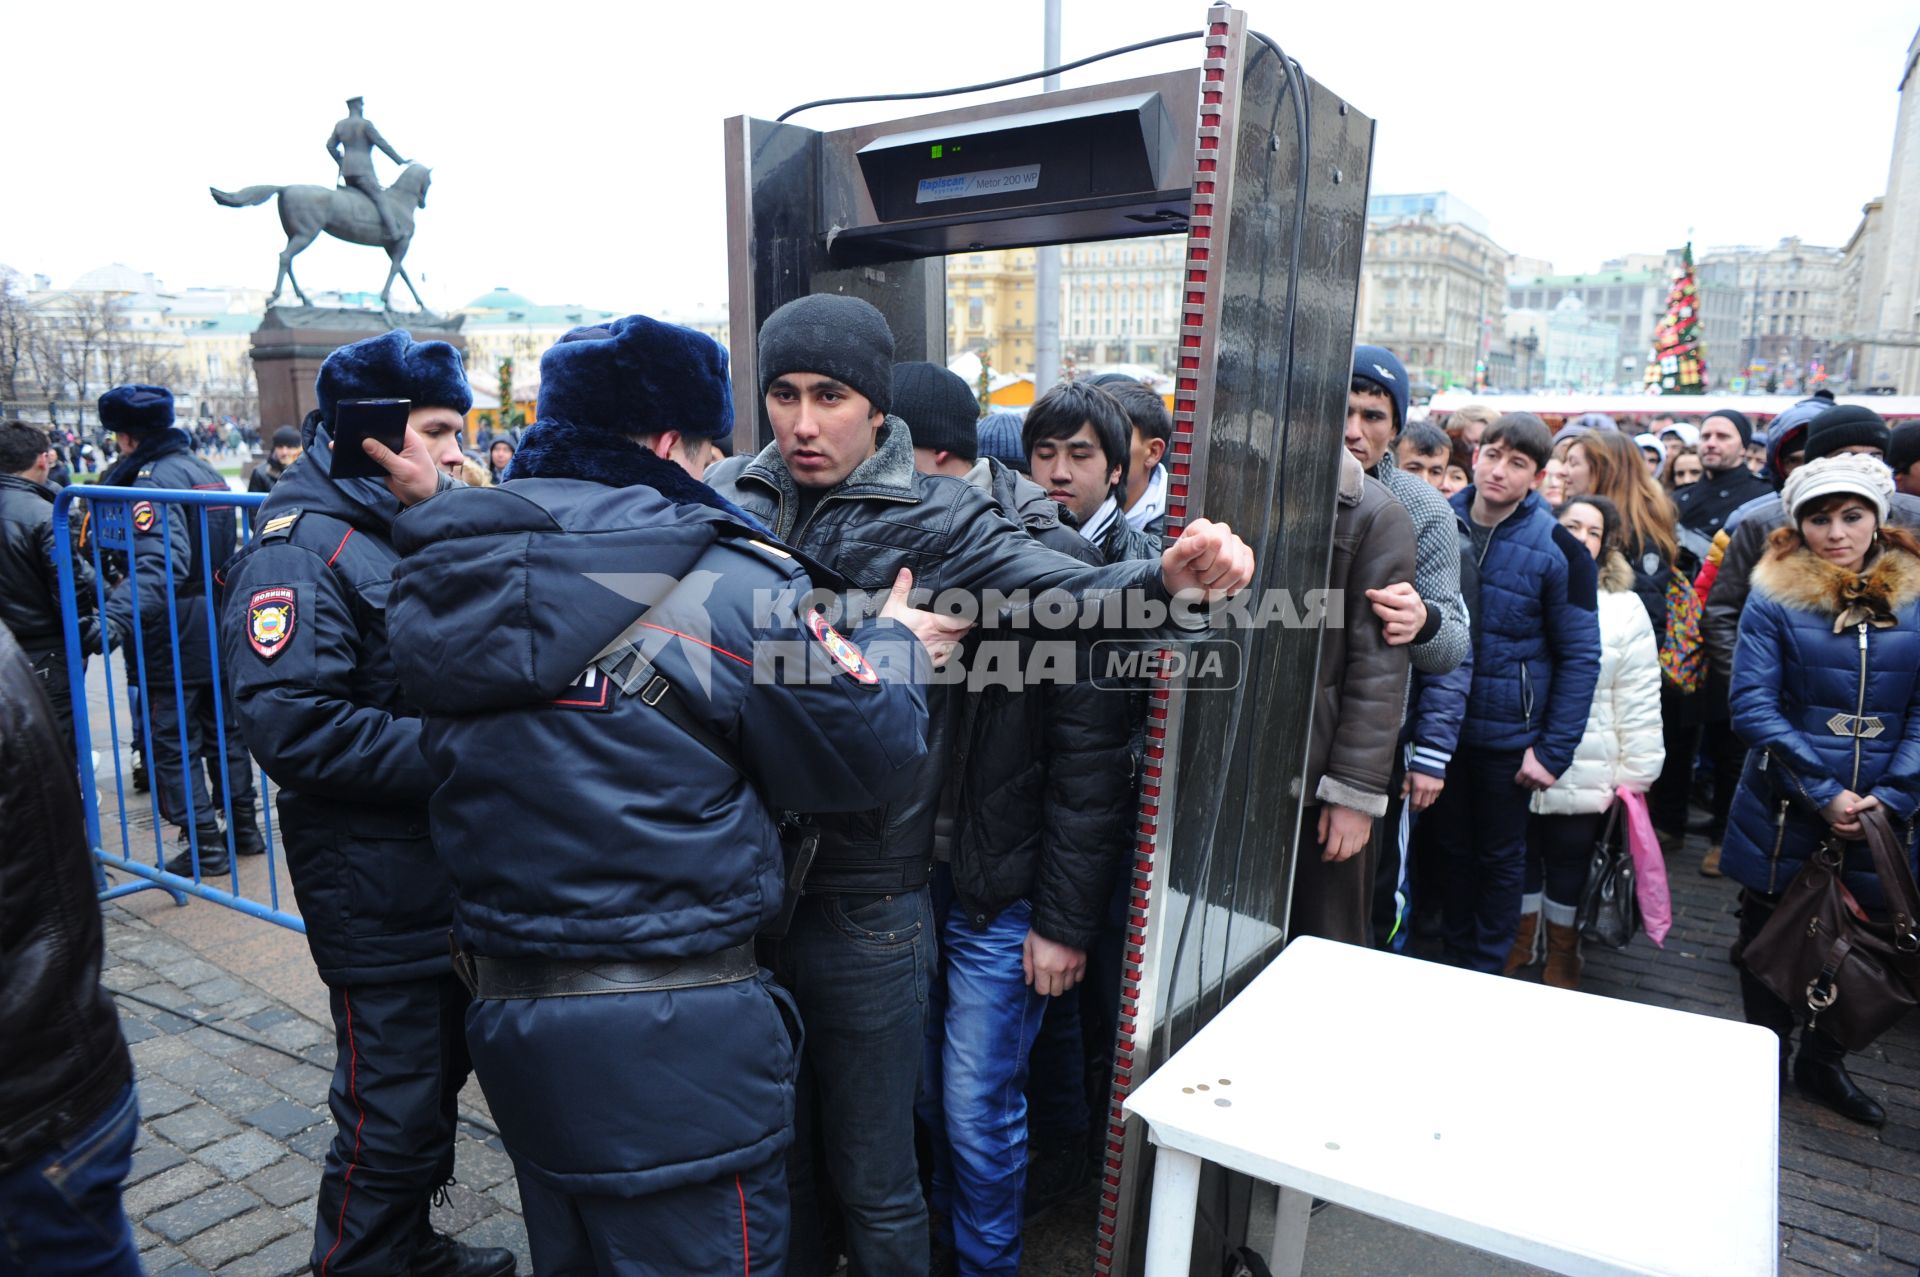 Мигранты из Средней Азии проходят на Красную Площадь через рамку металлоискатель.